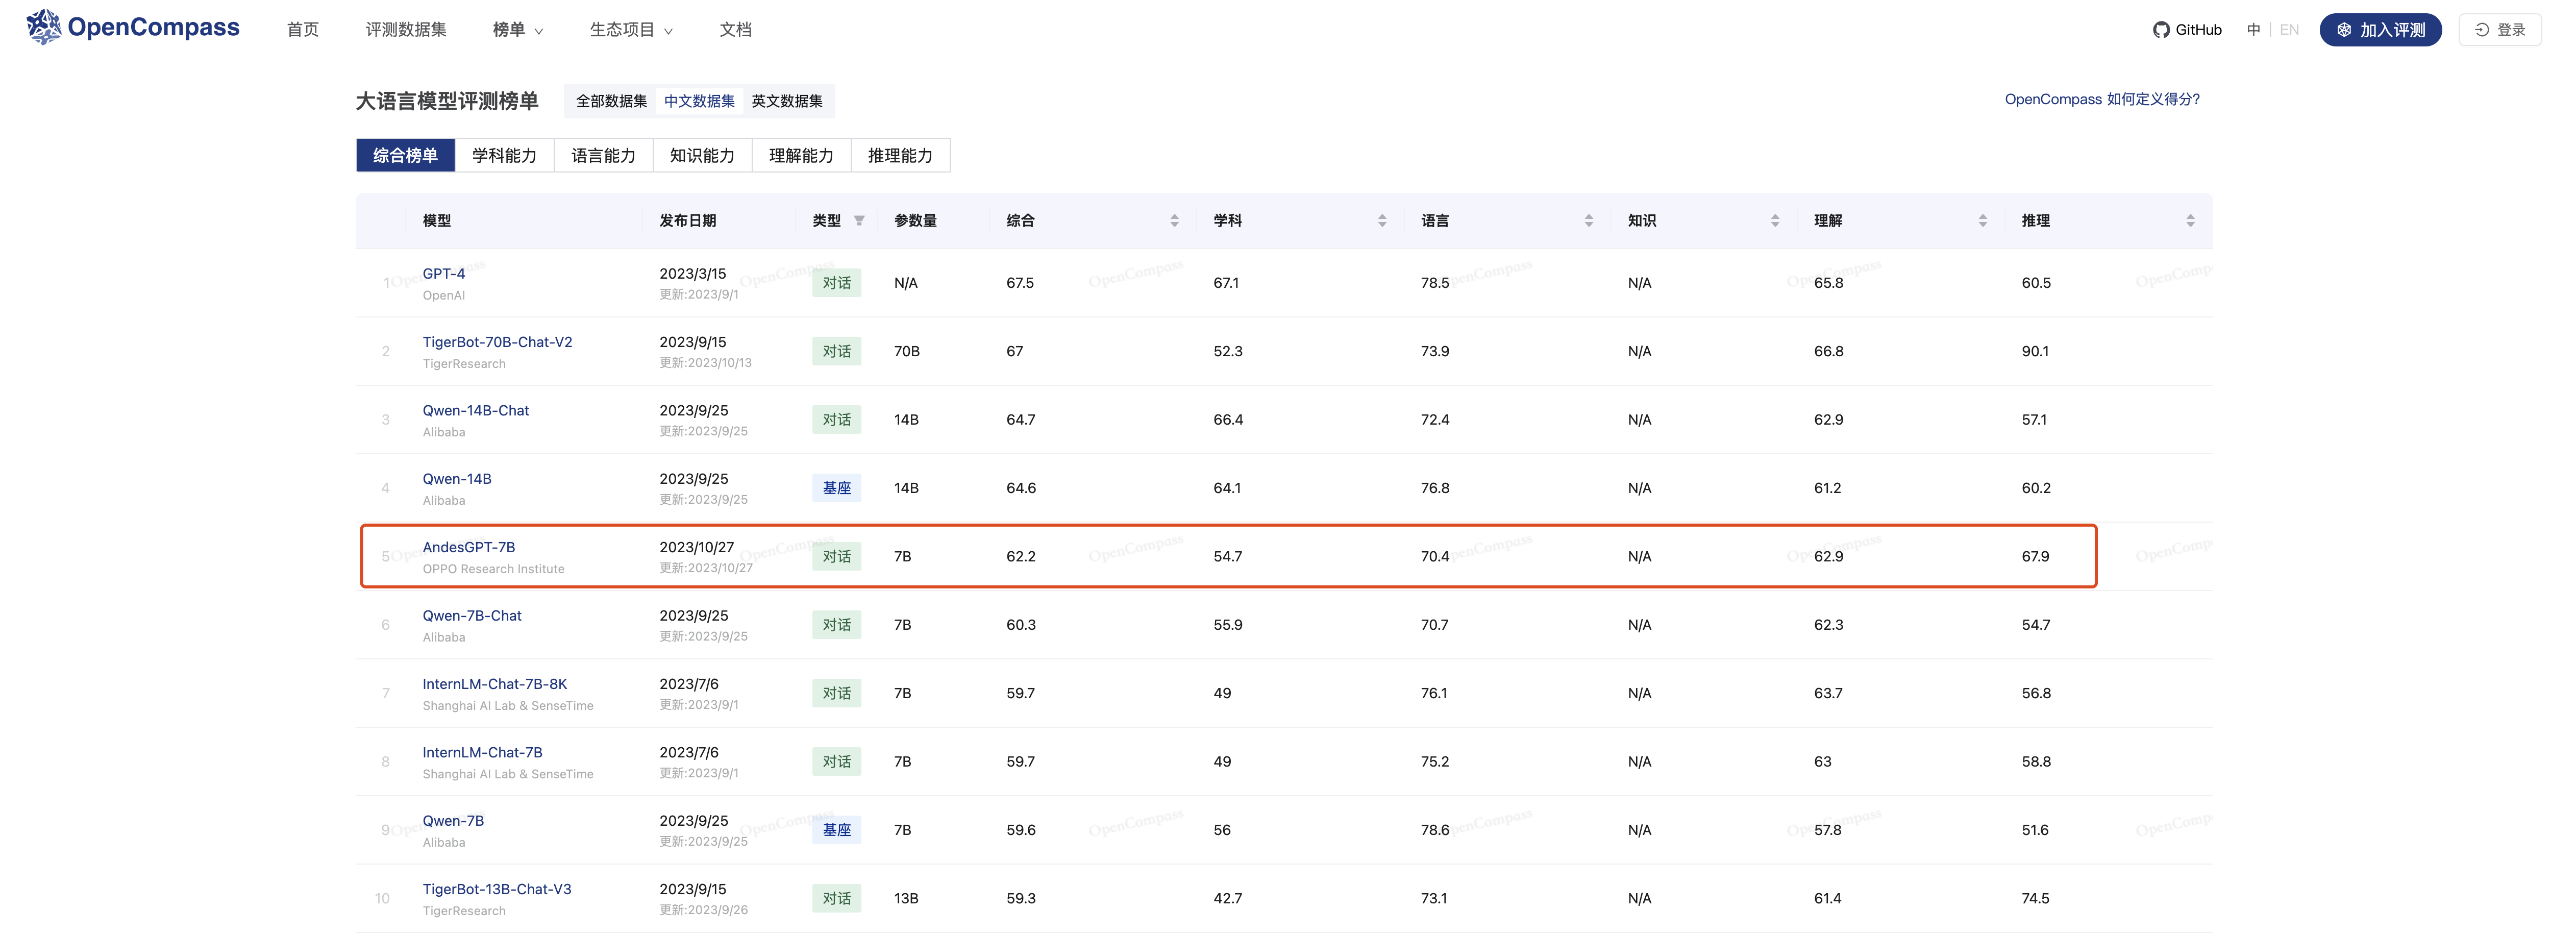 (OpenCompass大言语模子评测榜单-汉文数据集 2023/10/30)